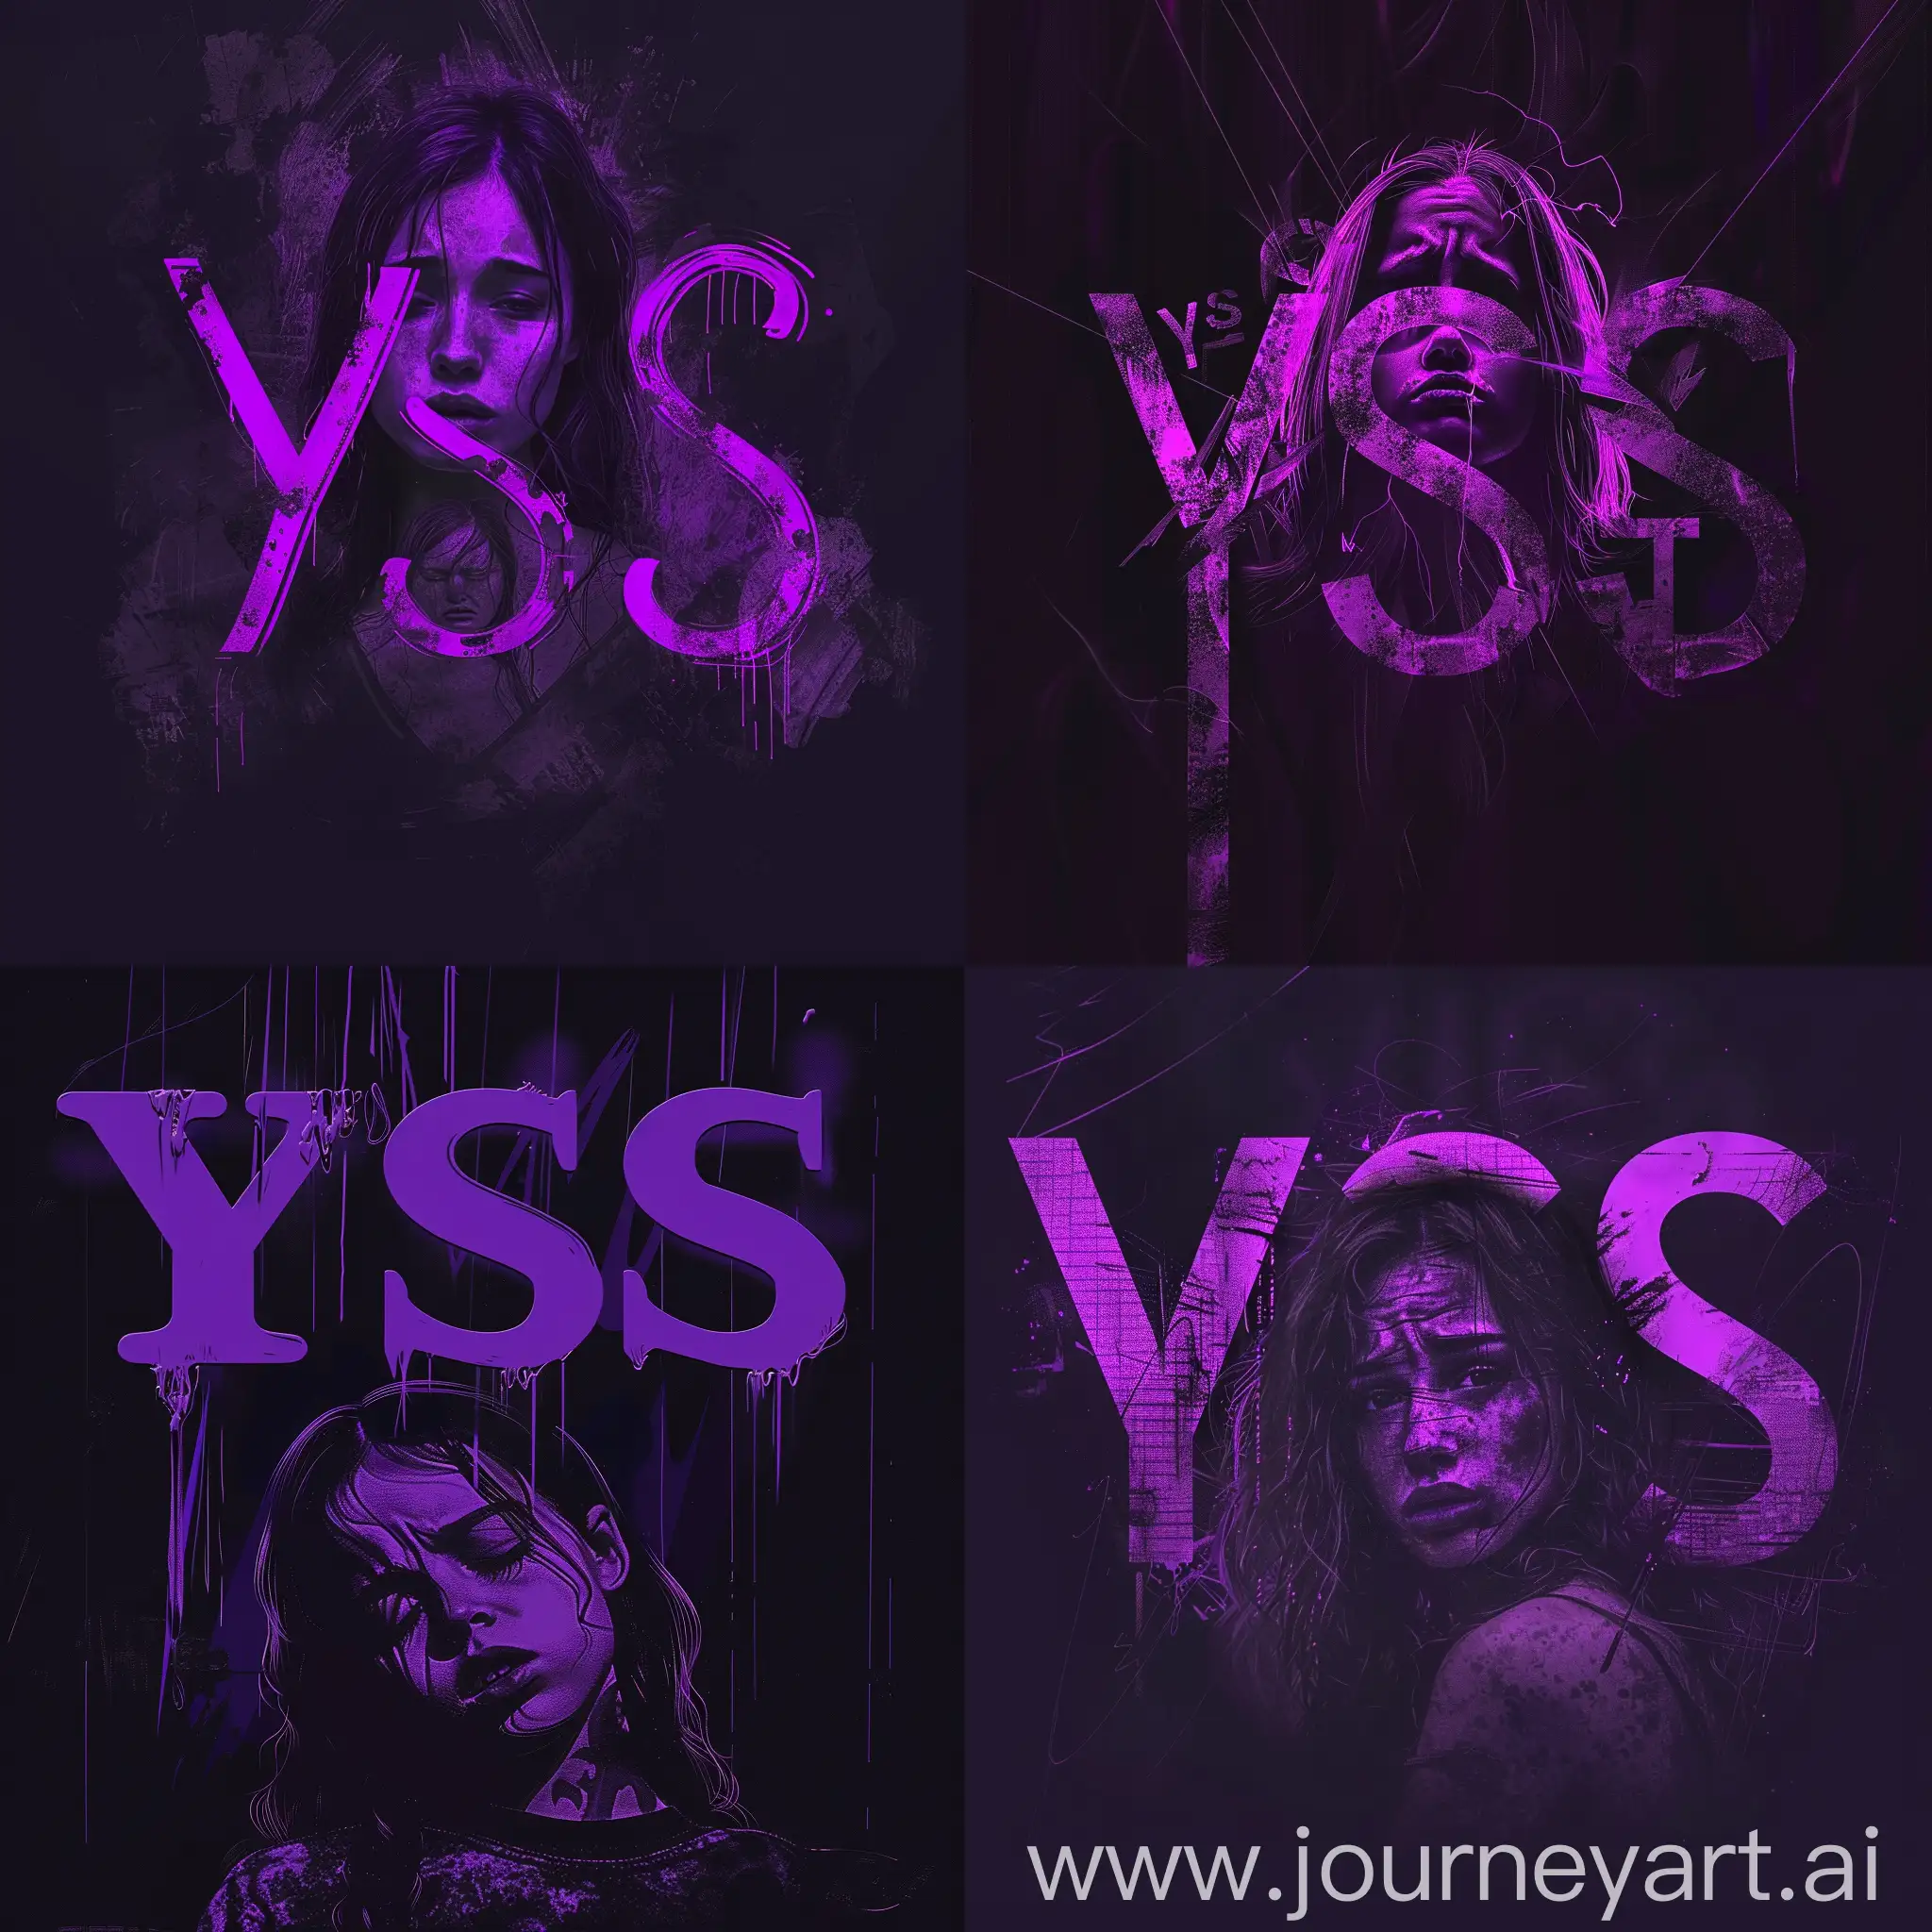 Мрачные фиолетовые буквы "YSS", на фоне темного фона с изображением грустной сестры в центре